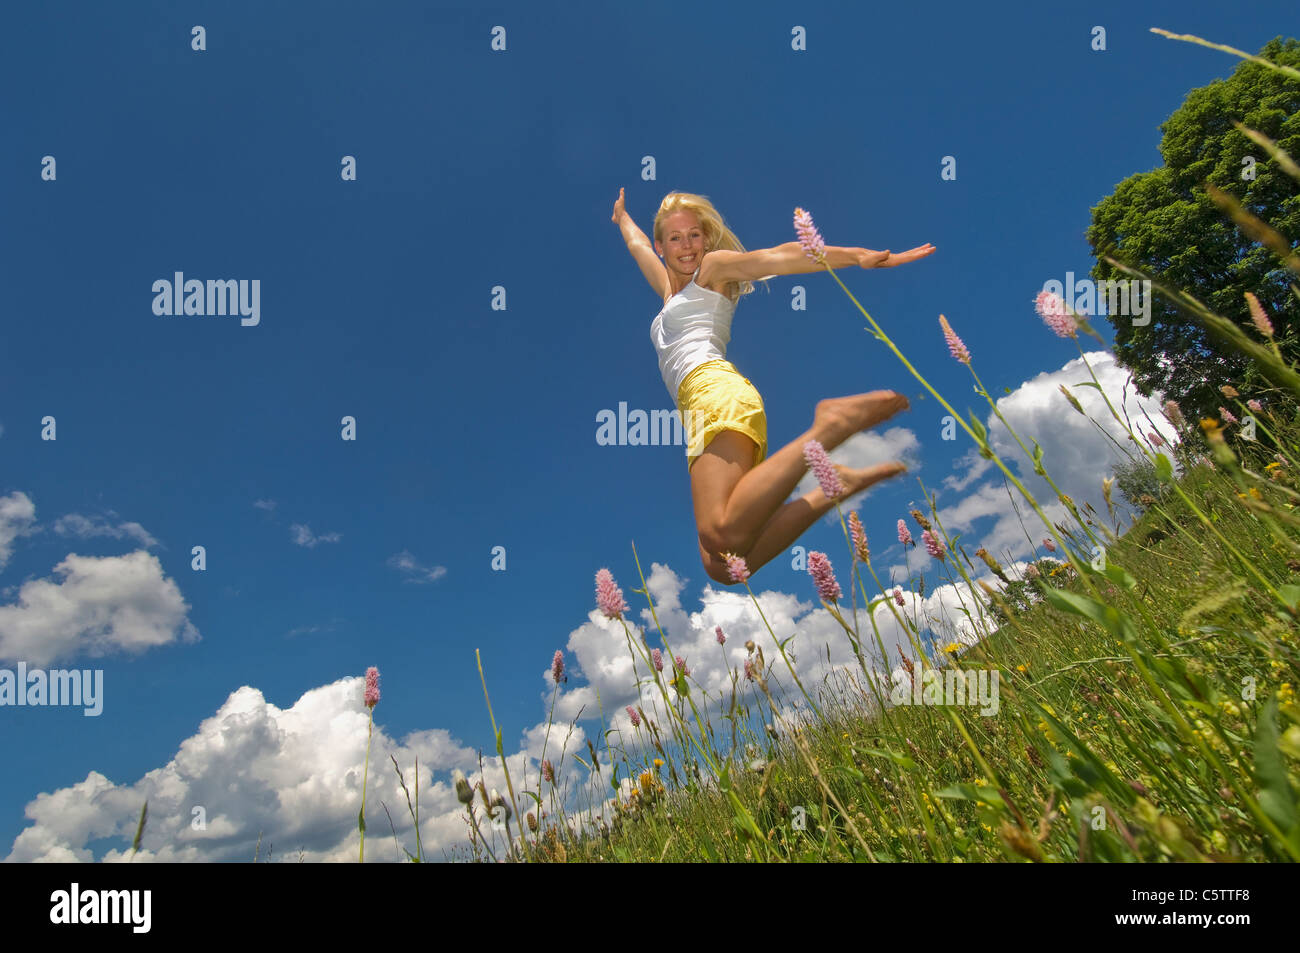 L'Autriche, Salzburger Land, Altenmarkt, jeune femme sautant dans un pré, smiling Banque D'Images